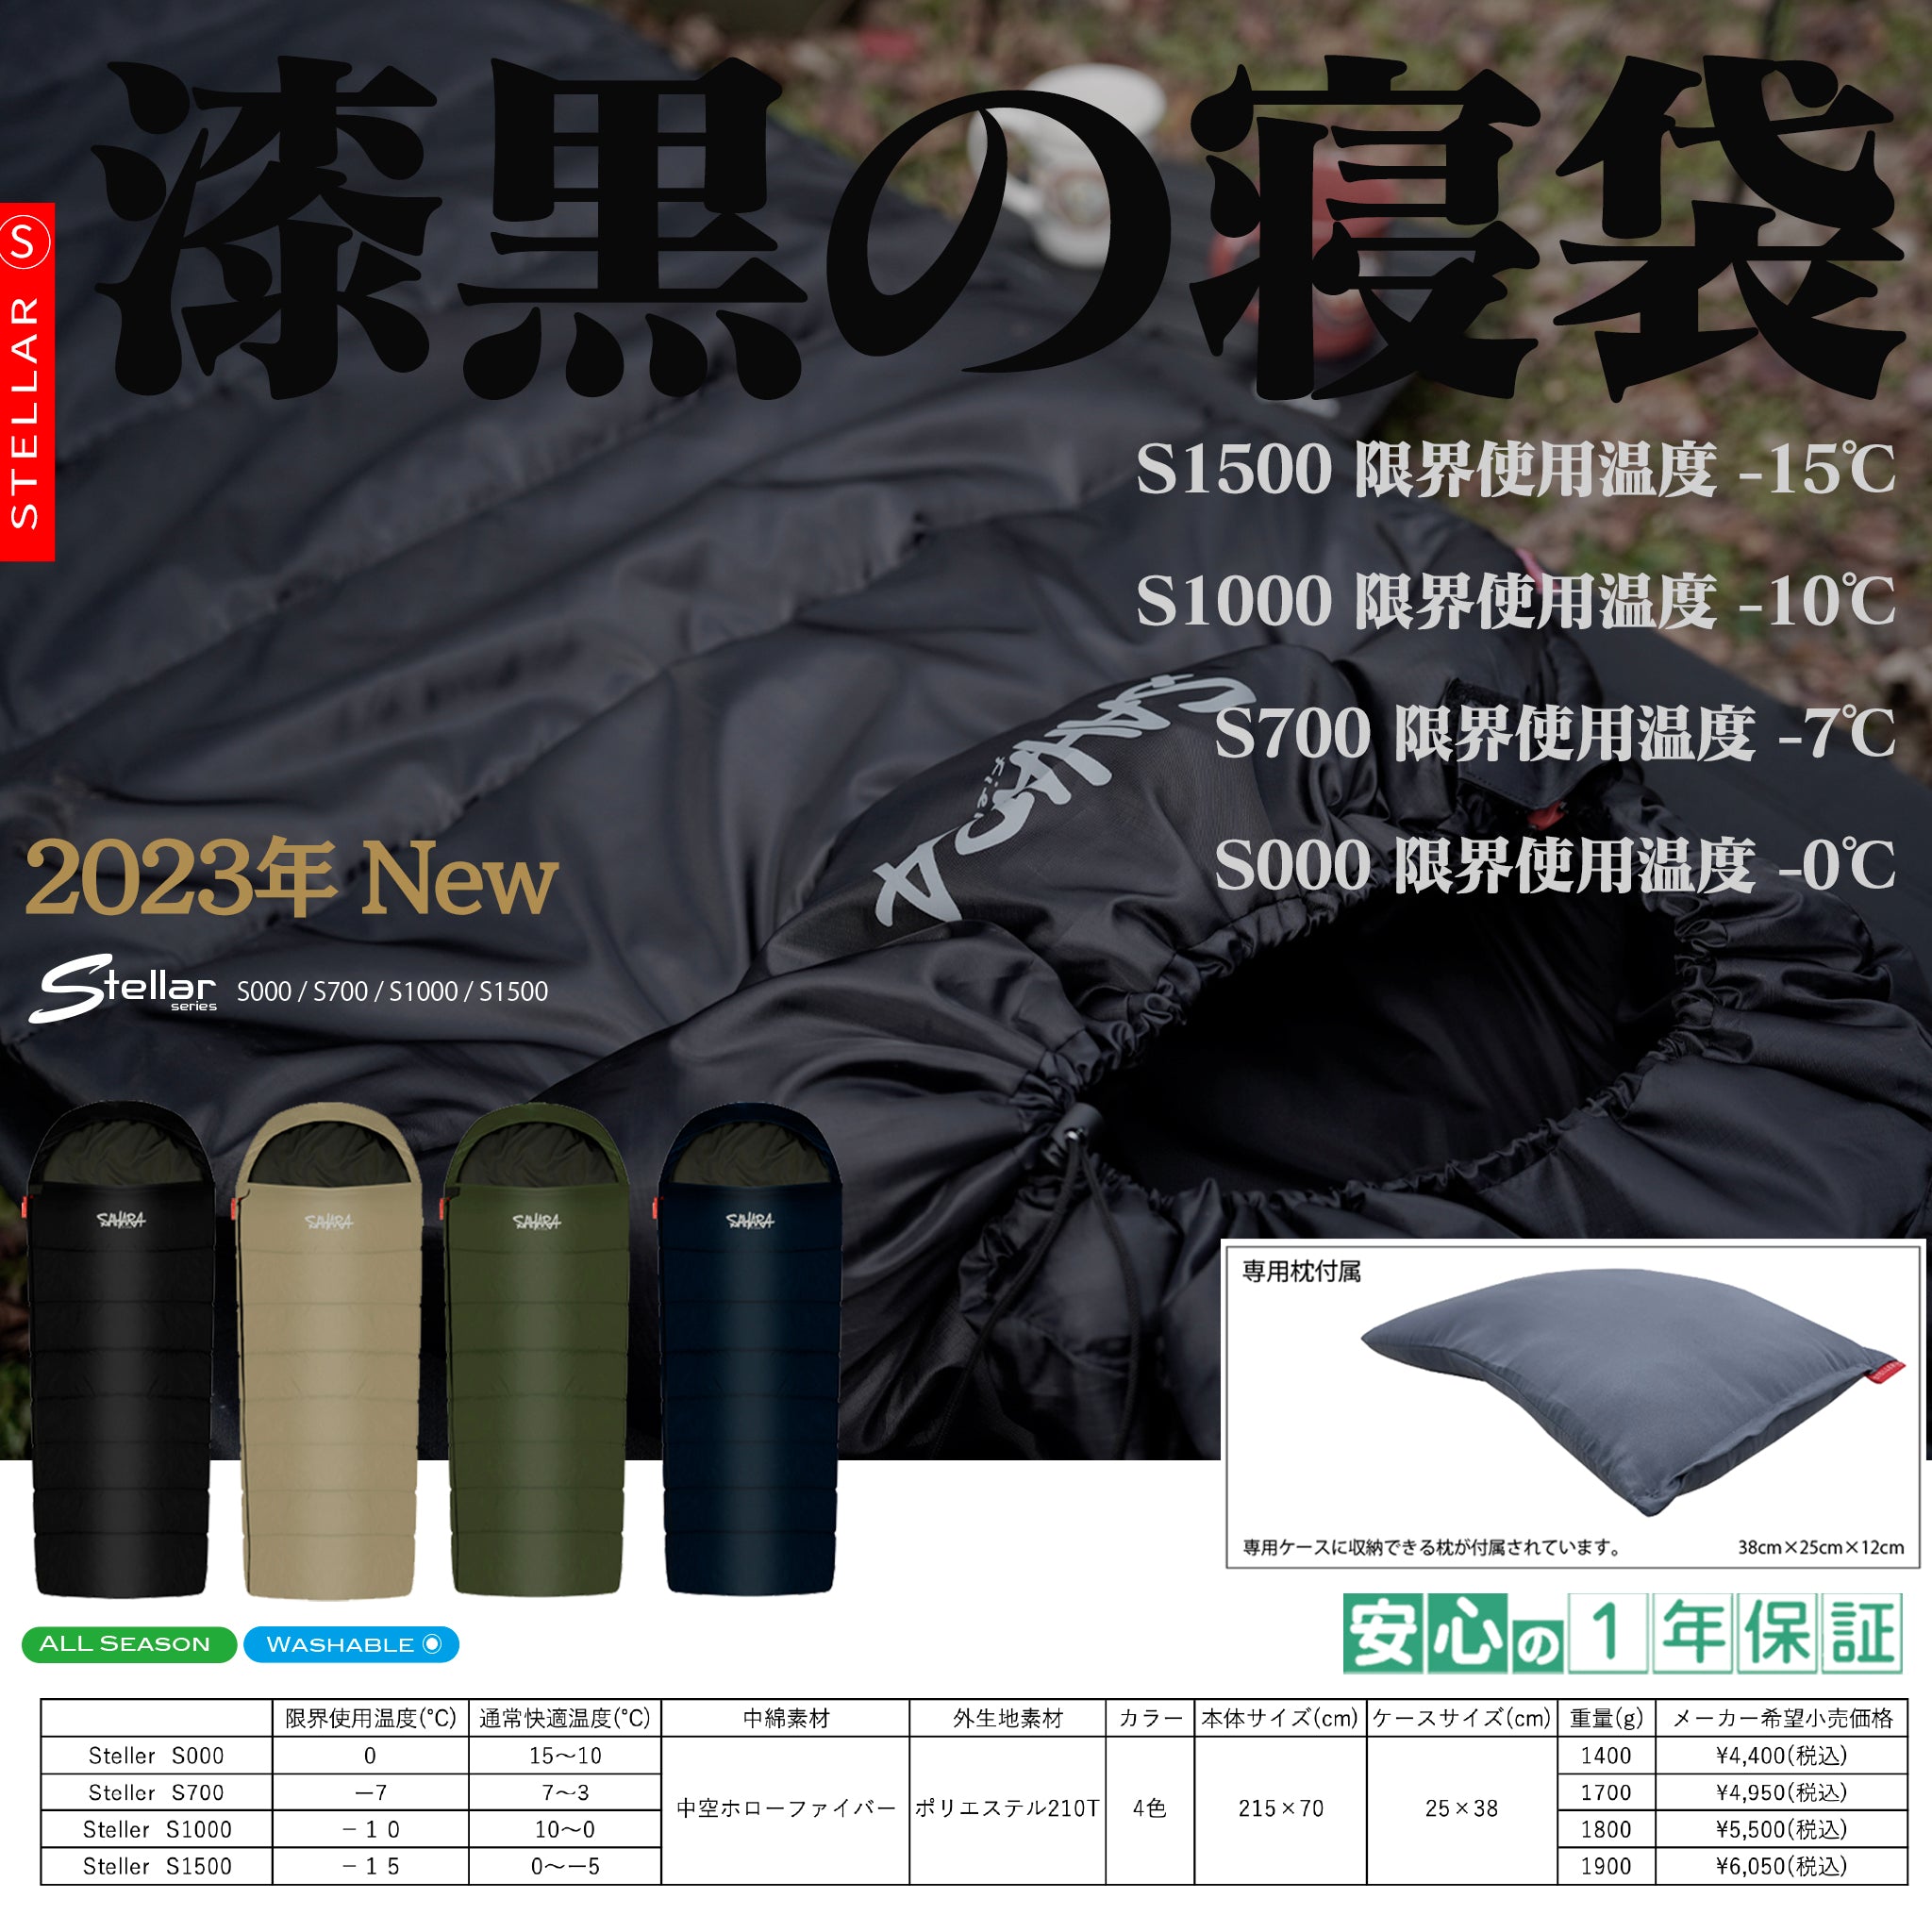 FieldSAHARA S700 封筒型 4色 限界使用可能温度 -7℃